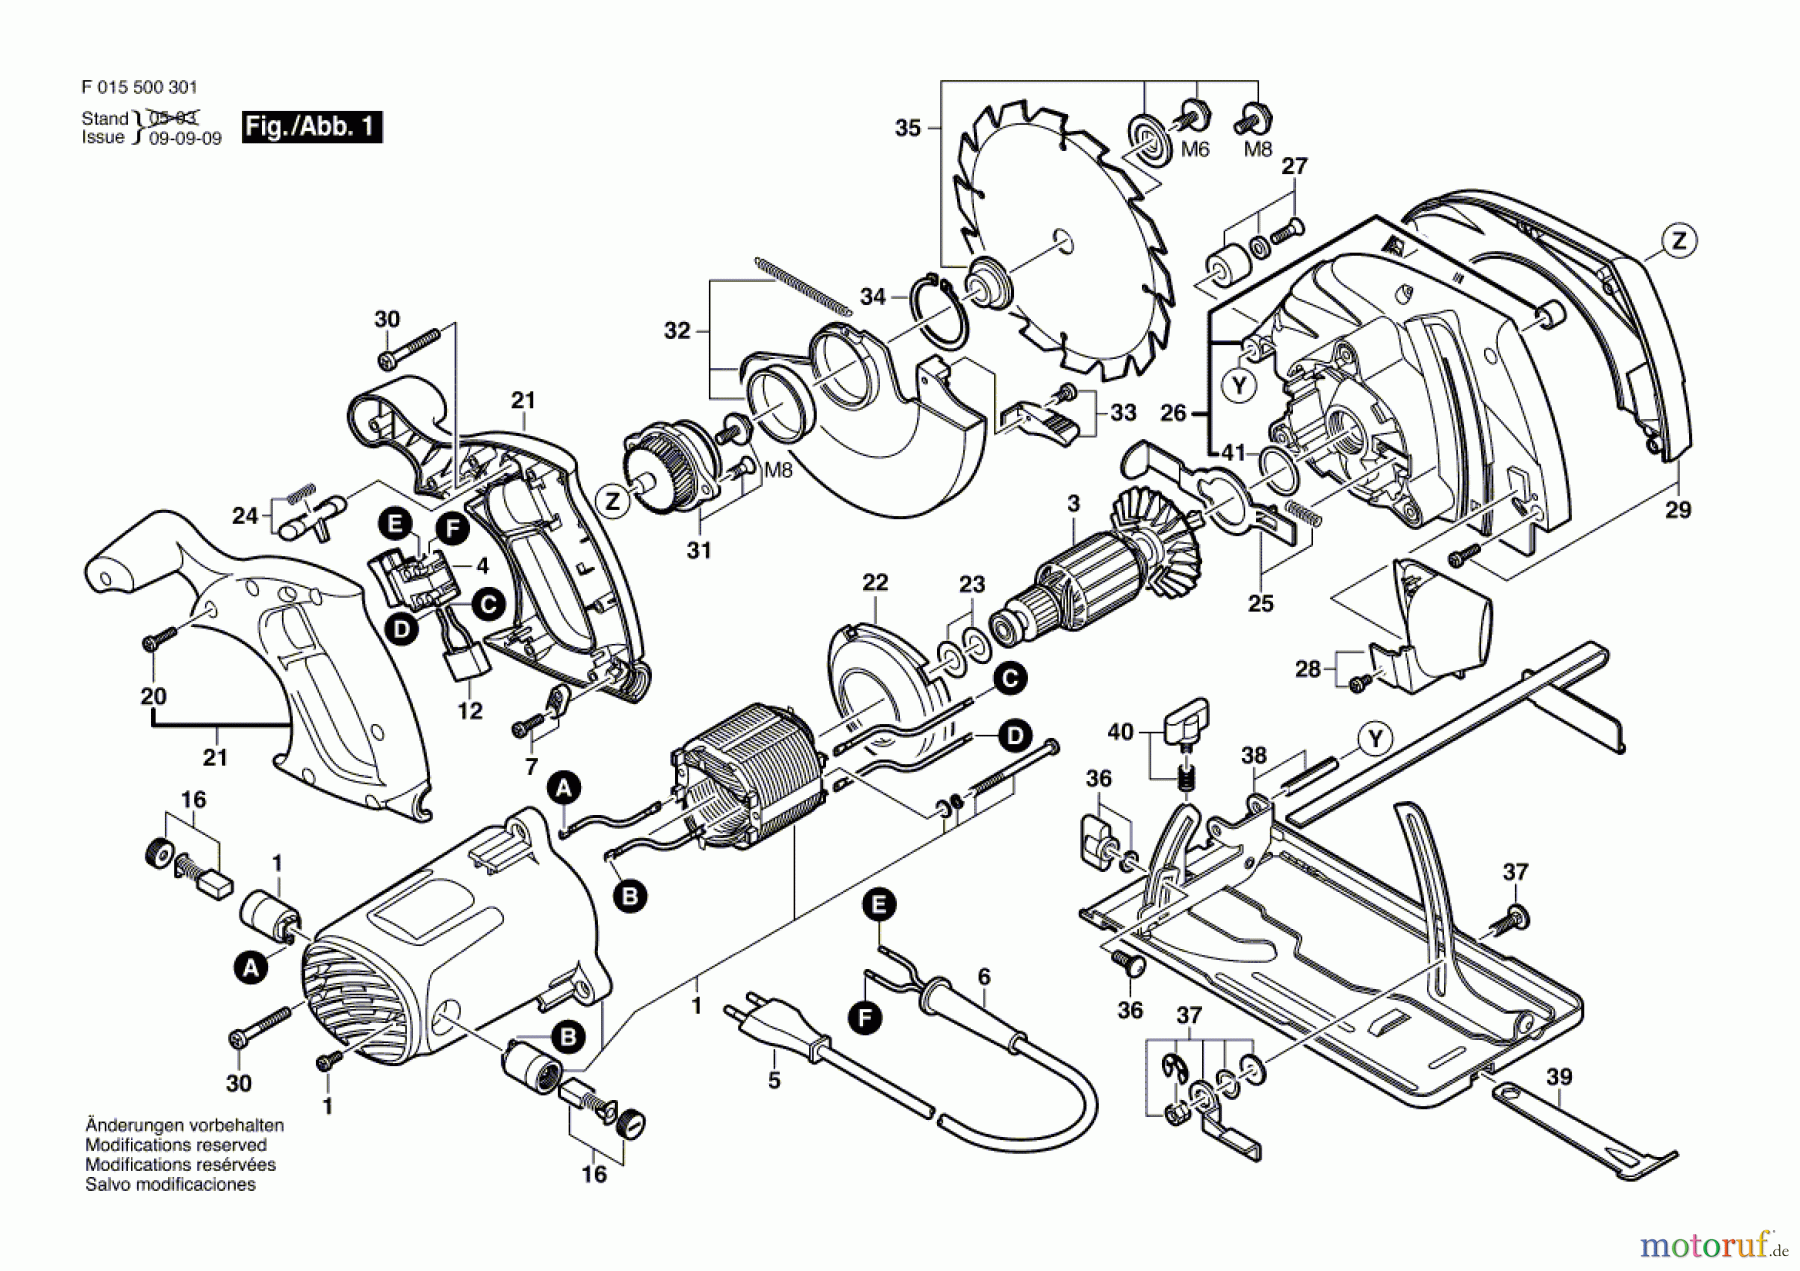  Bosch Werkzeug Kreissäge 5003 Seite 1